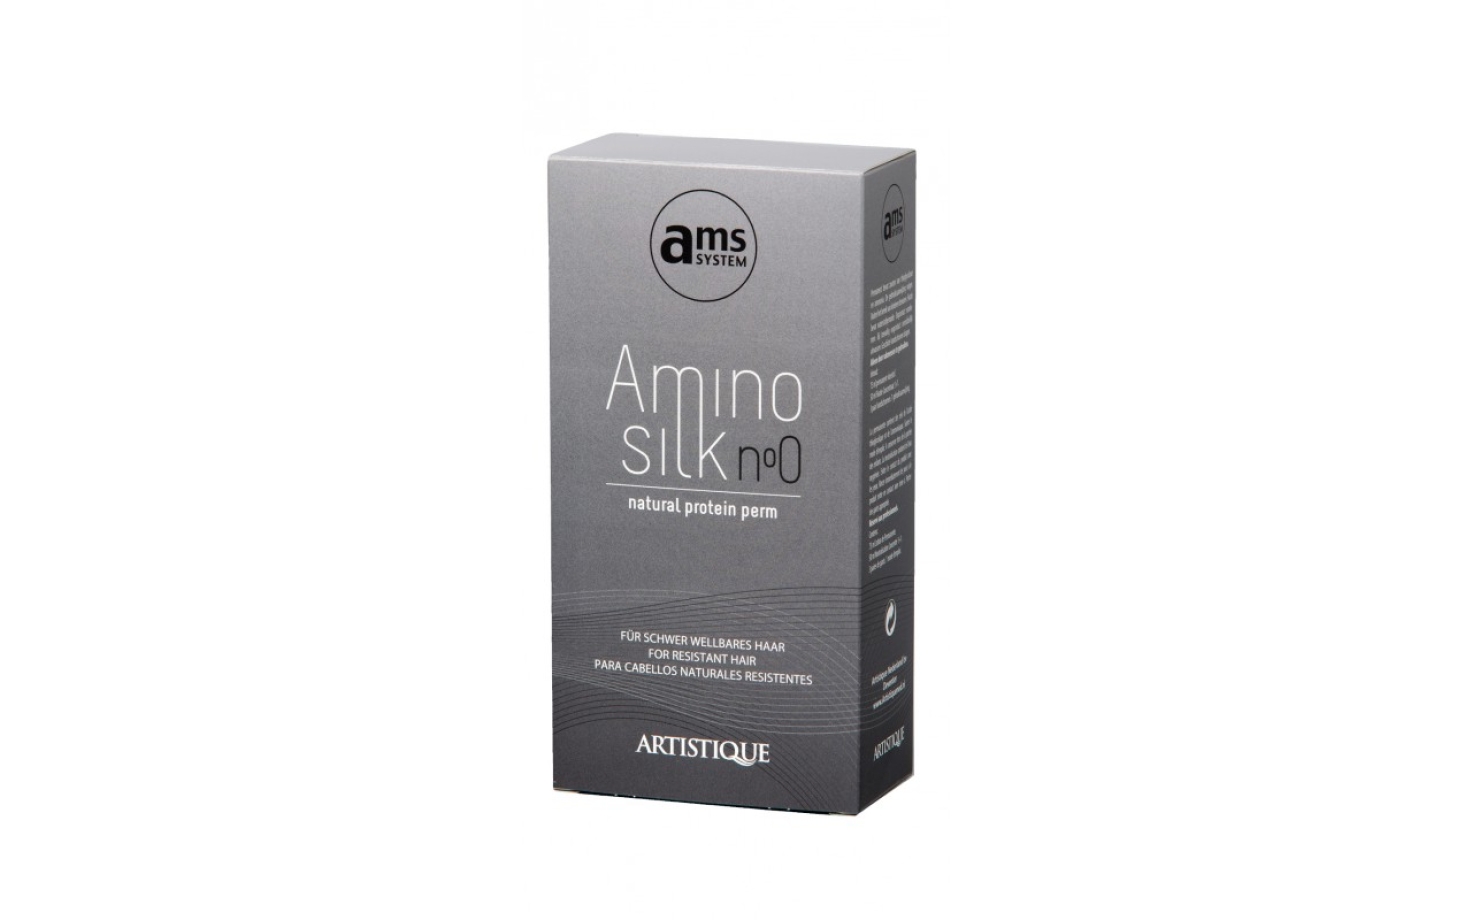 AminoSilk Natural Protein Perm 0 für schwer wellbares Haar